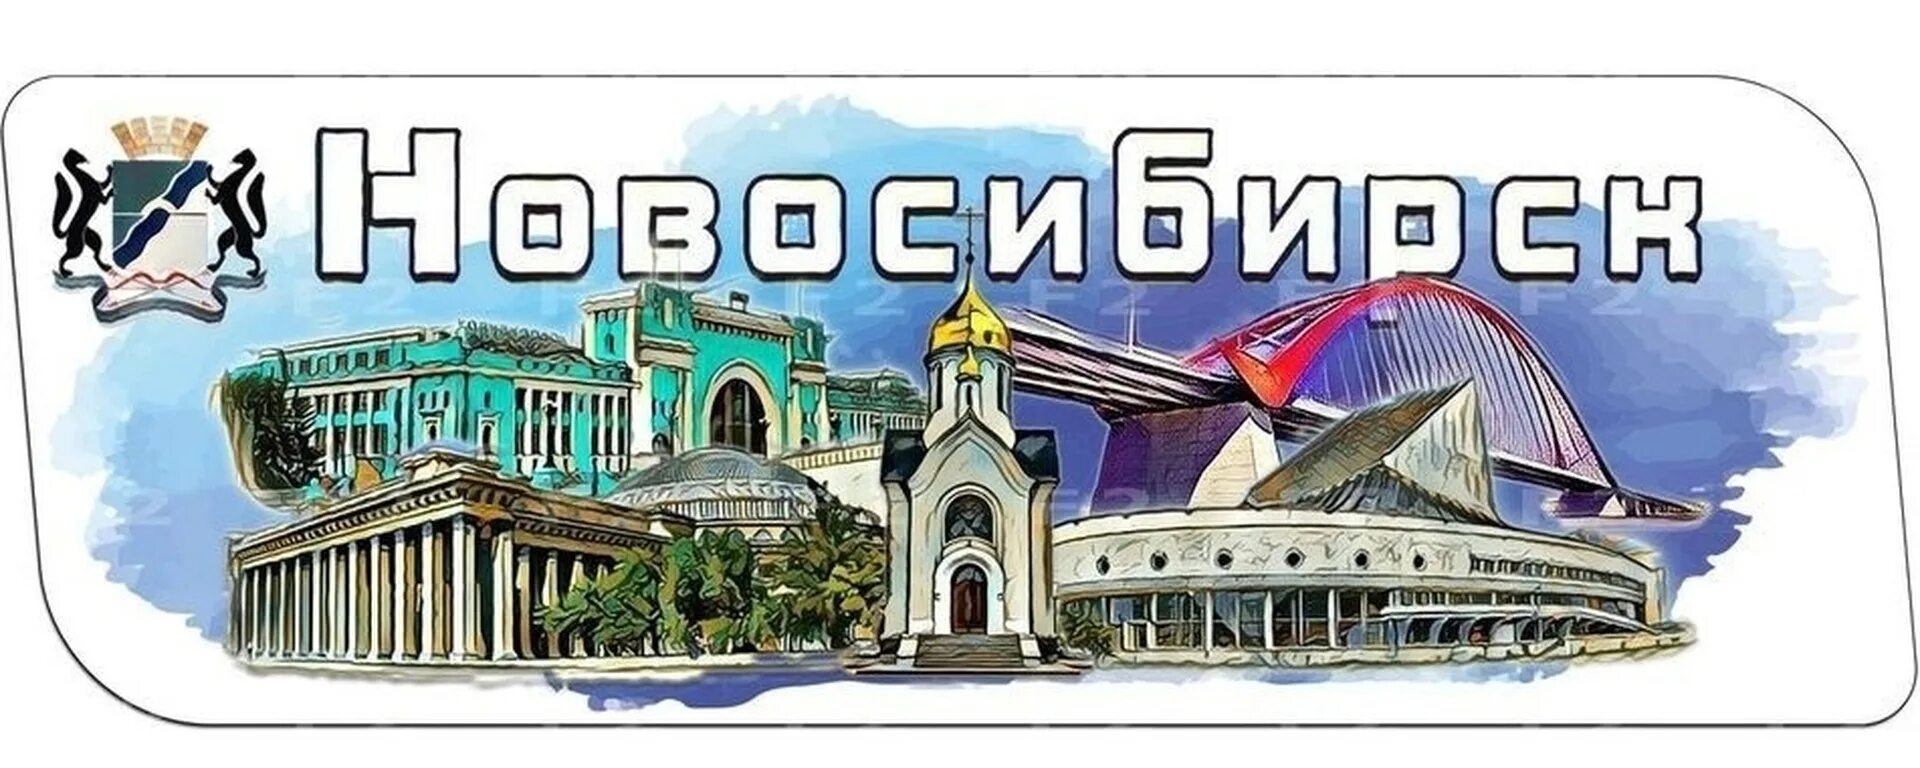 Новосибирск надпись. Логотип города достопримечательности. Новосибирск логотип города. Достопримечательности Новосибирска надпись.